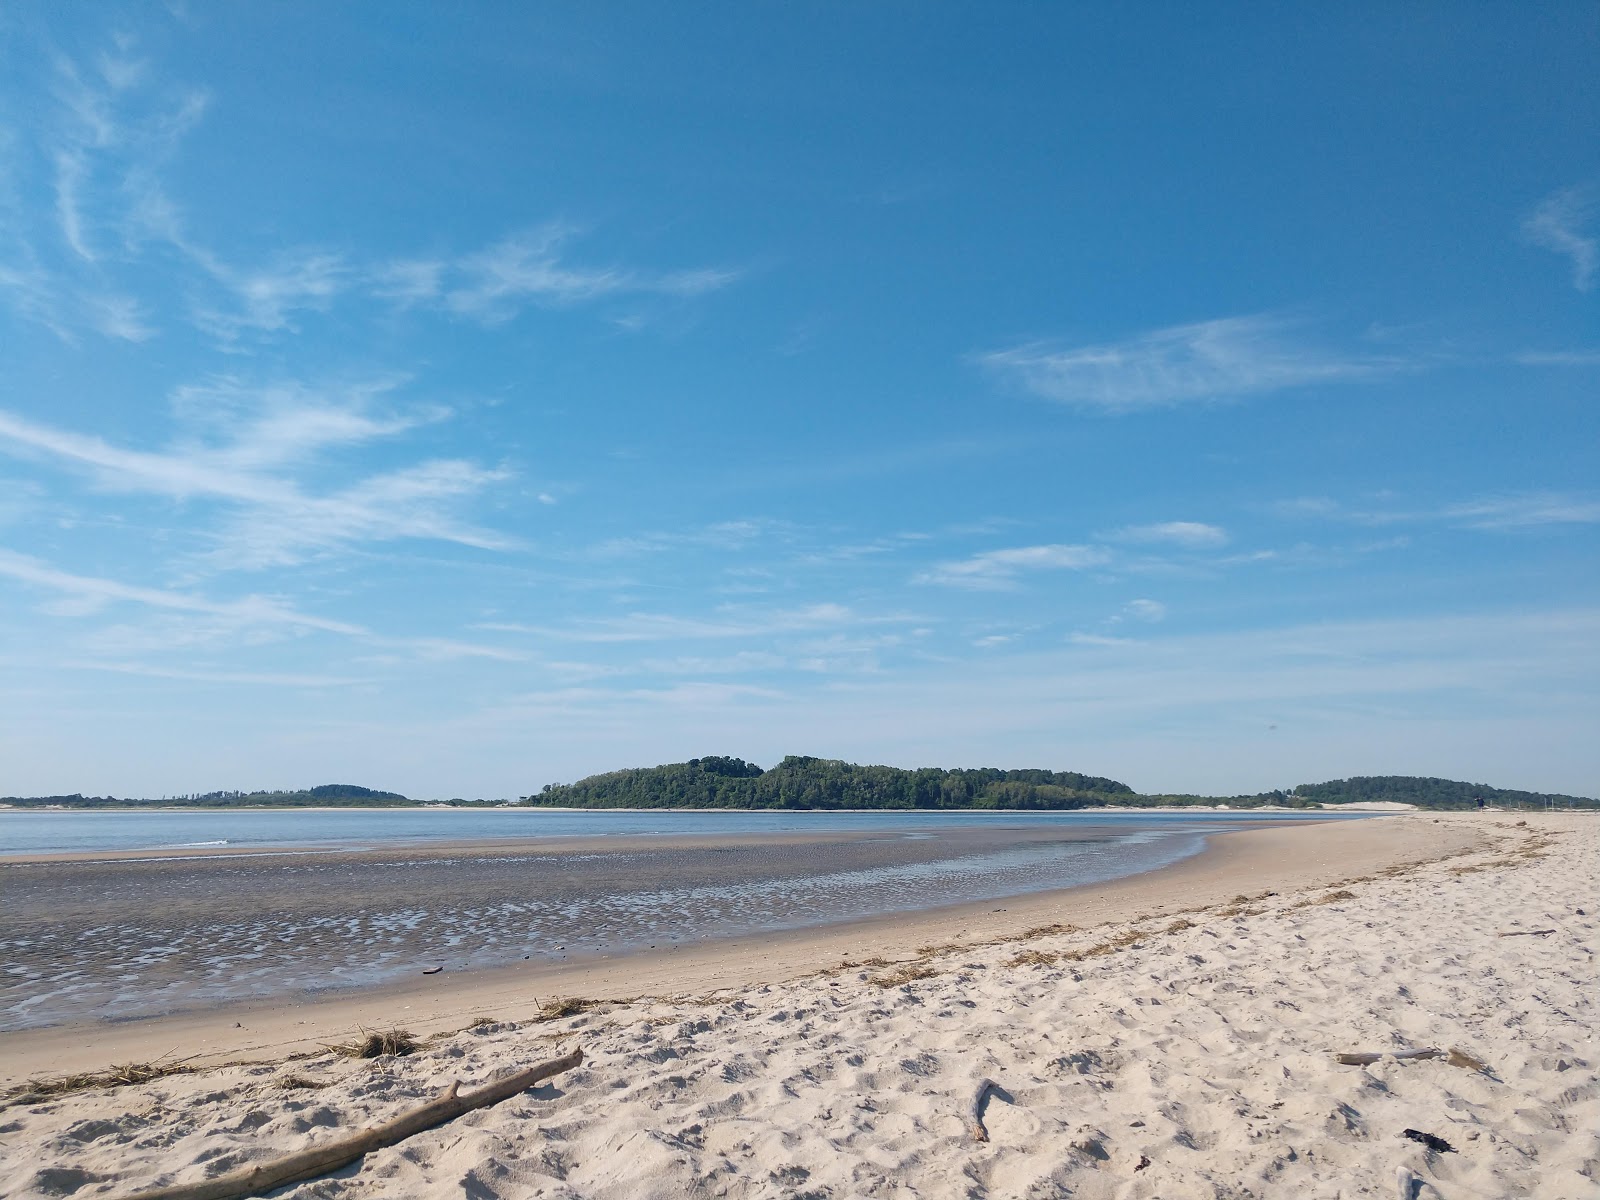 Fotografie cu Sandy Point beach - locul popular printre cunoscătorii de relaxare